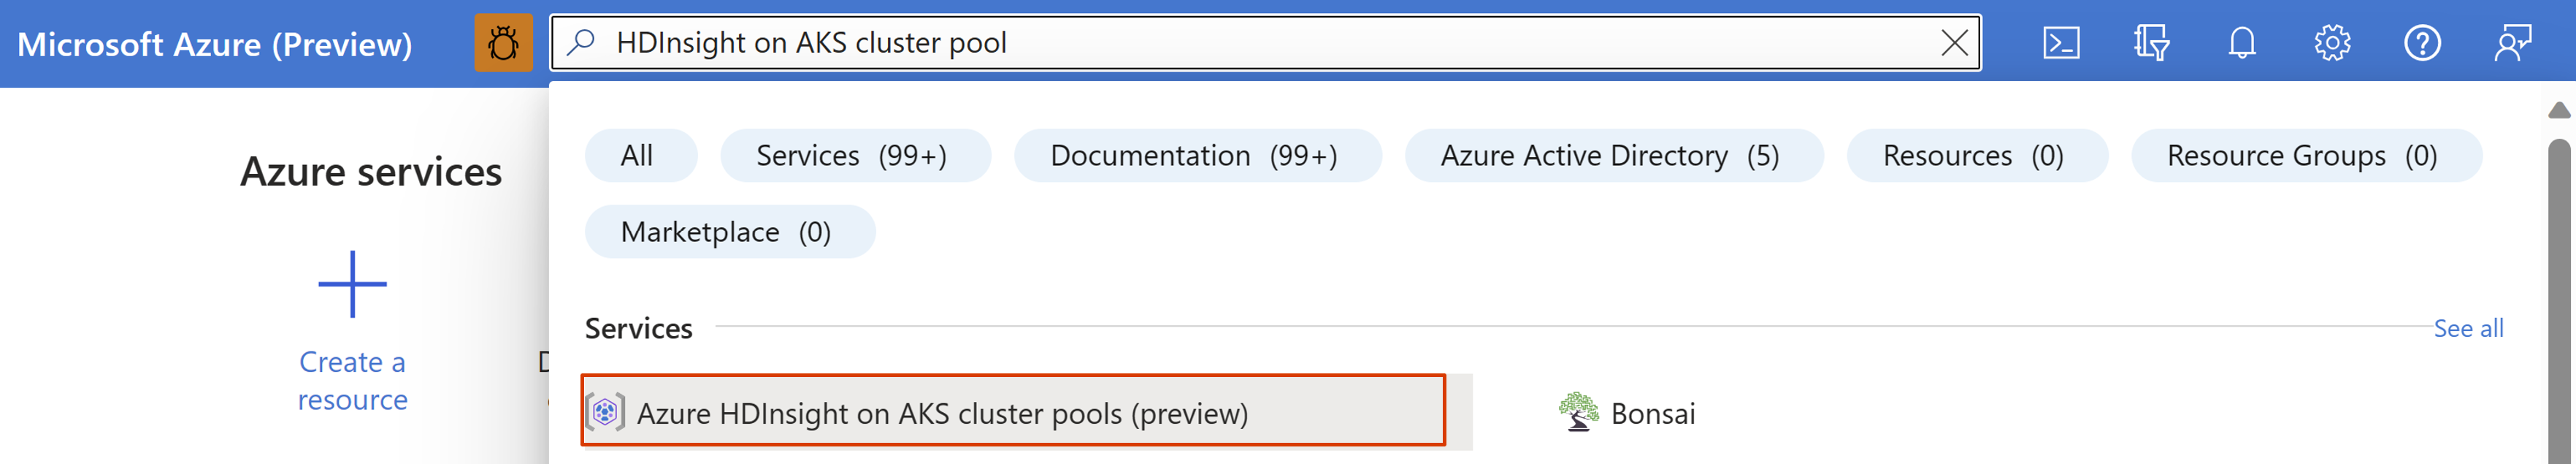 Screenshot showing search bar in Azure portal.